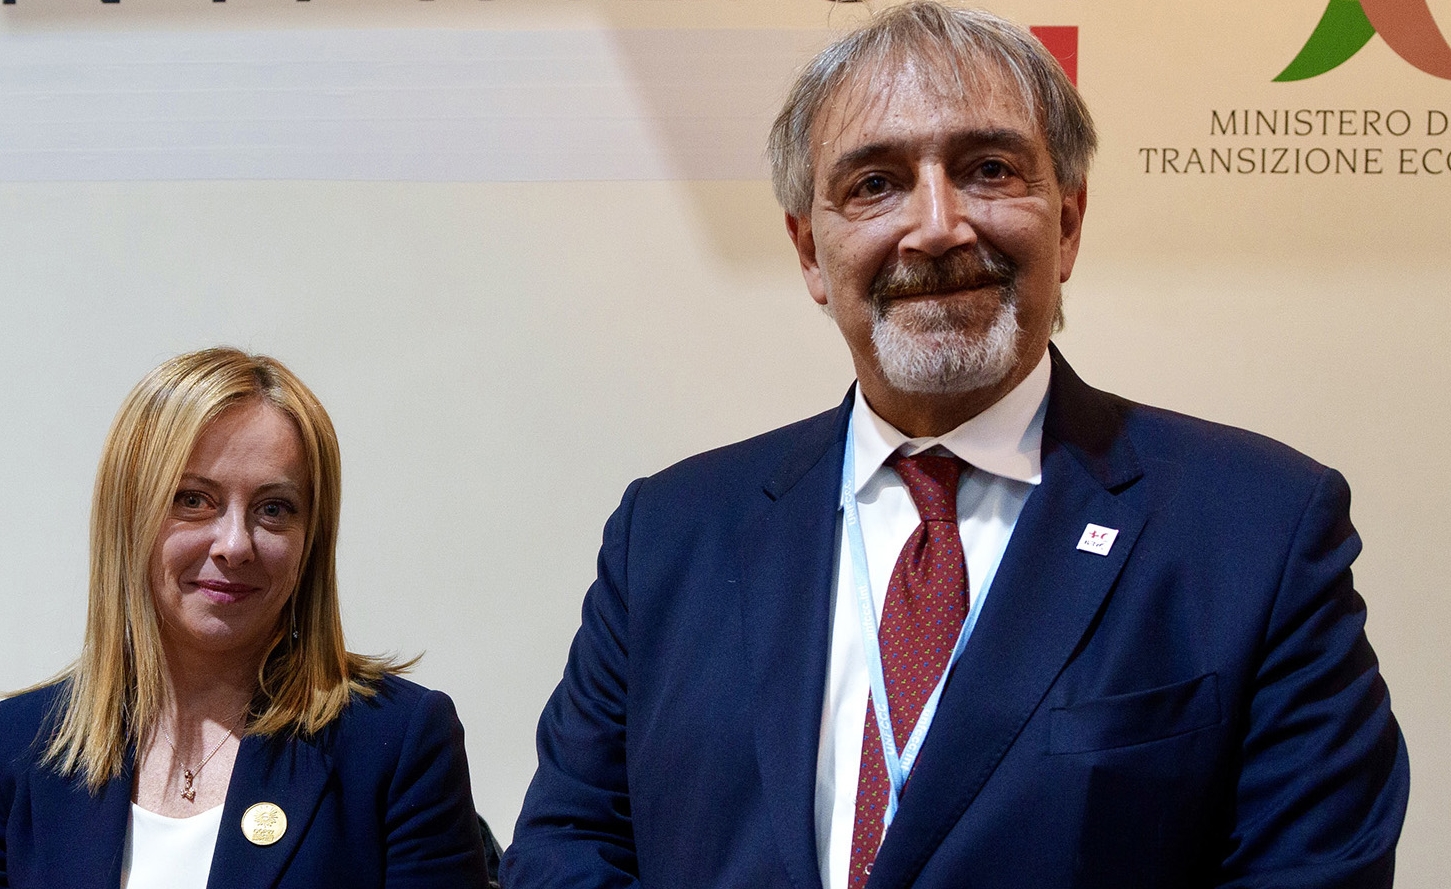 Regionali Lazio, Francesco Rocca è il candidato della destra: è l'ex presidente della Croce Rossa